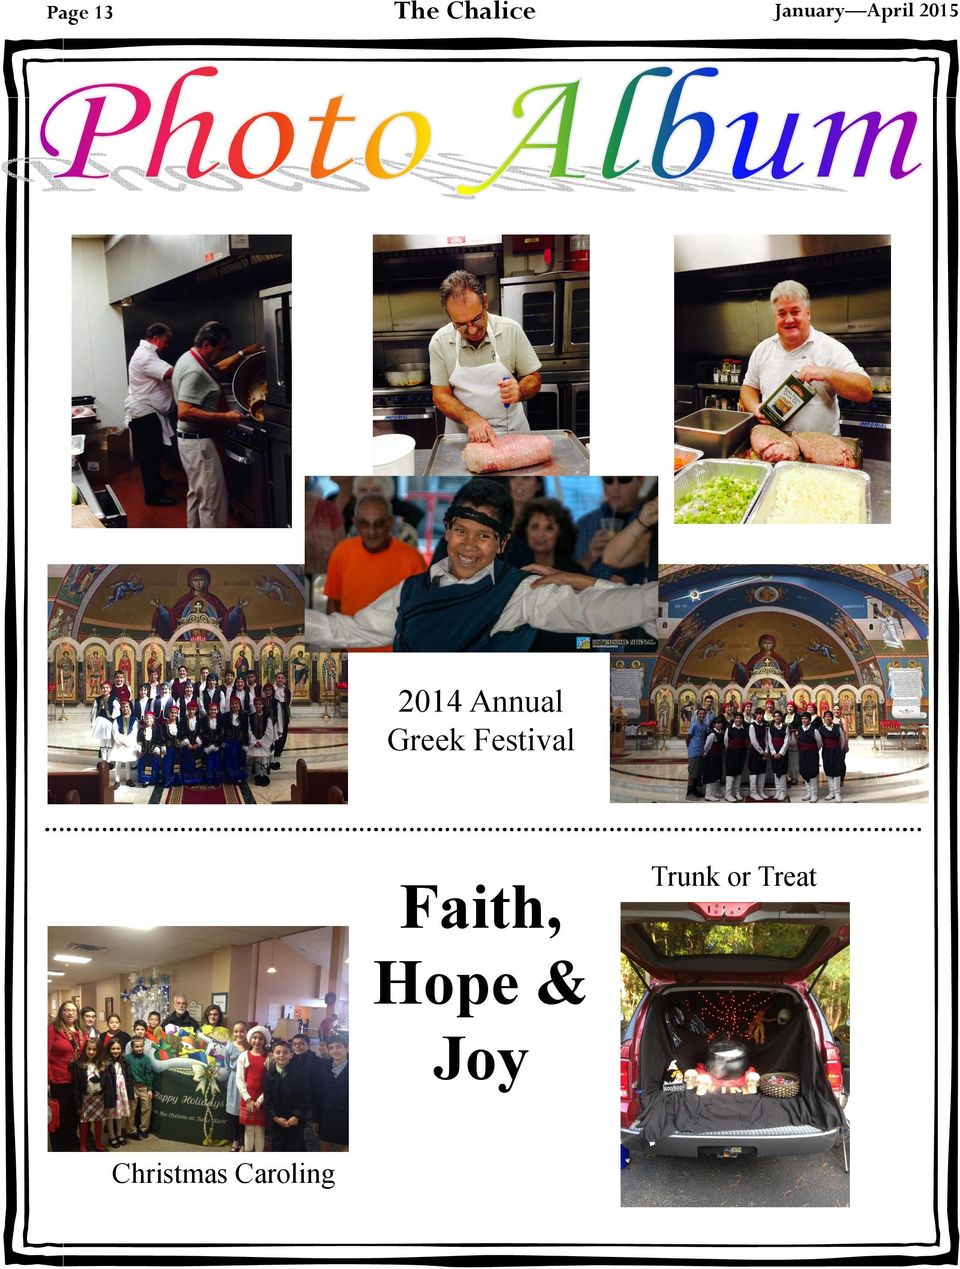 Festival Faith, Hope & Joy